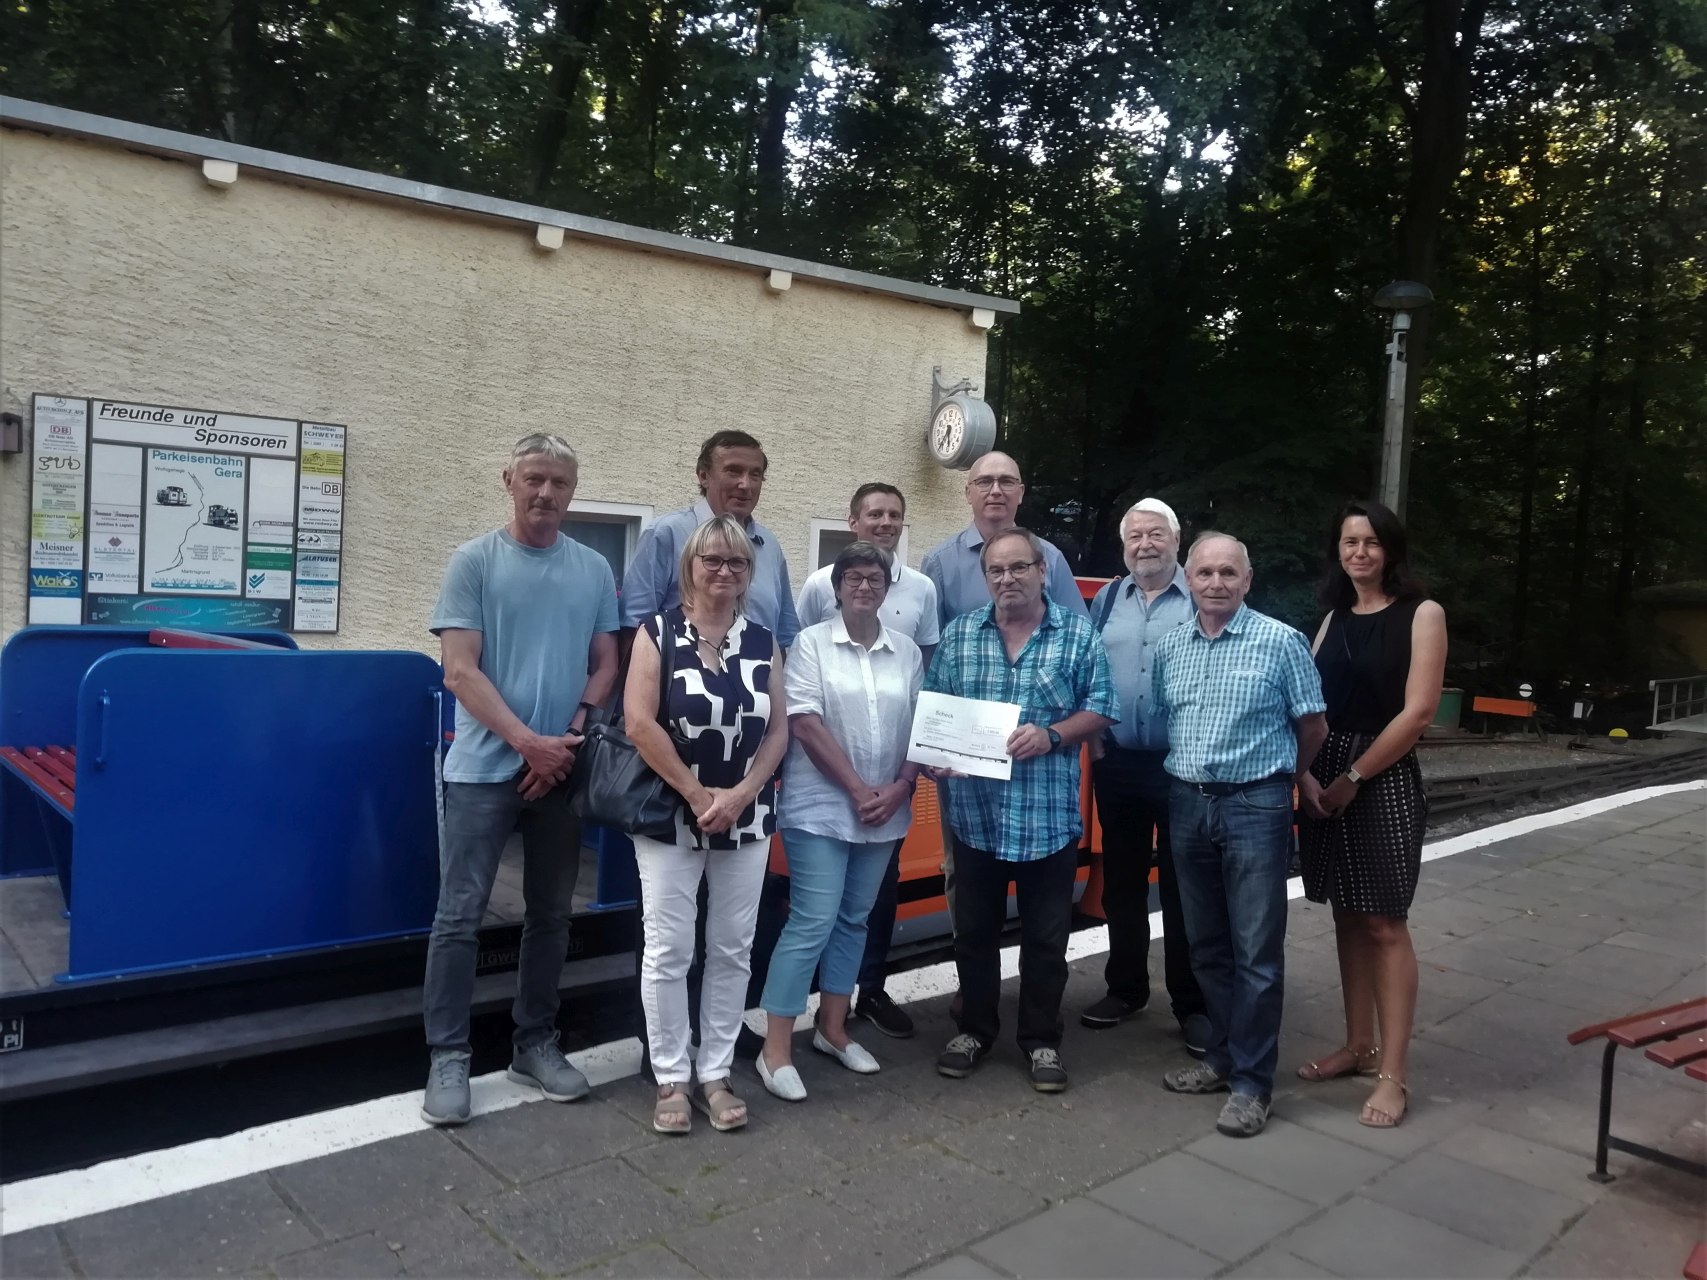 Rotary Club Gera setzt Engagement für Parkeisenbahn fort